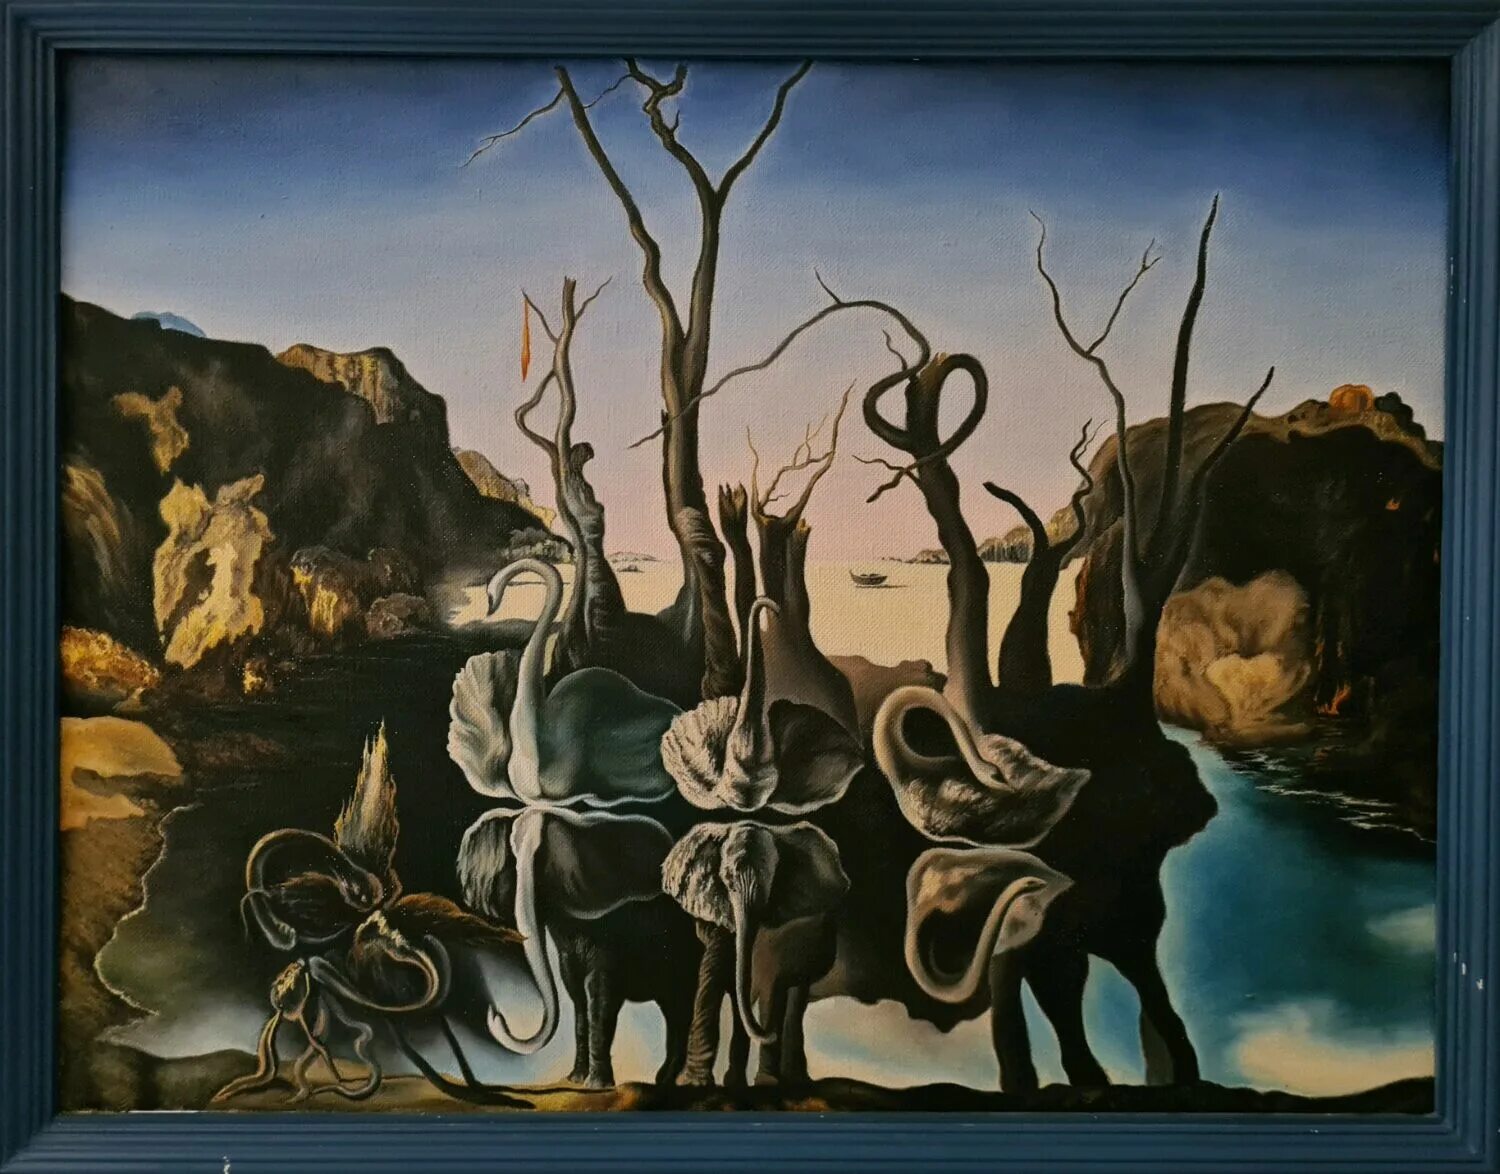 Лебеди отражающиеся в слонах. Сальвадор дали лебеди, отражающиеся в слонах. Сальвадор дали «лебеди, отражающиеся в слонах» (1937). Salvador Dali Swans reflecting Elephants. Лебеди отражающиеся в слонах Сальвадор.